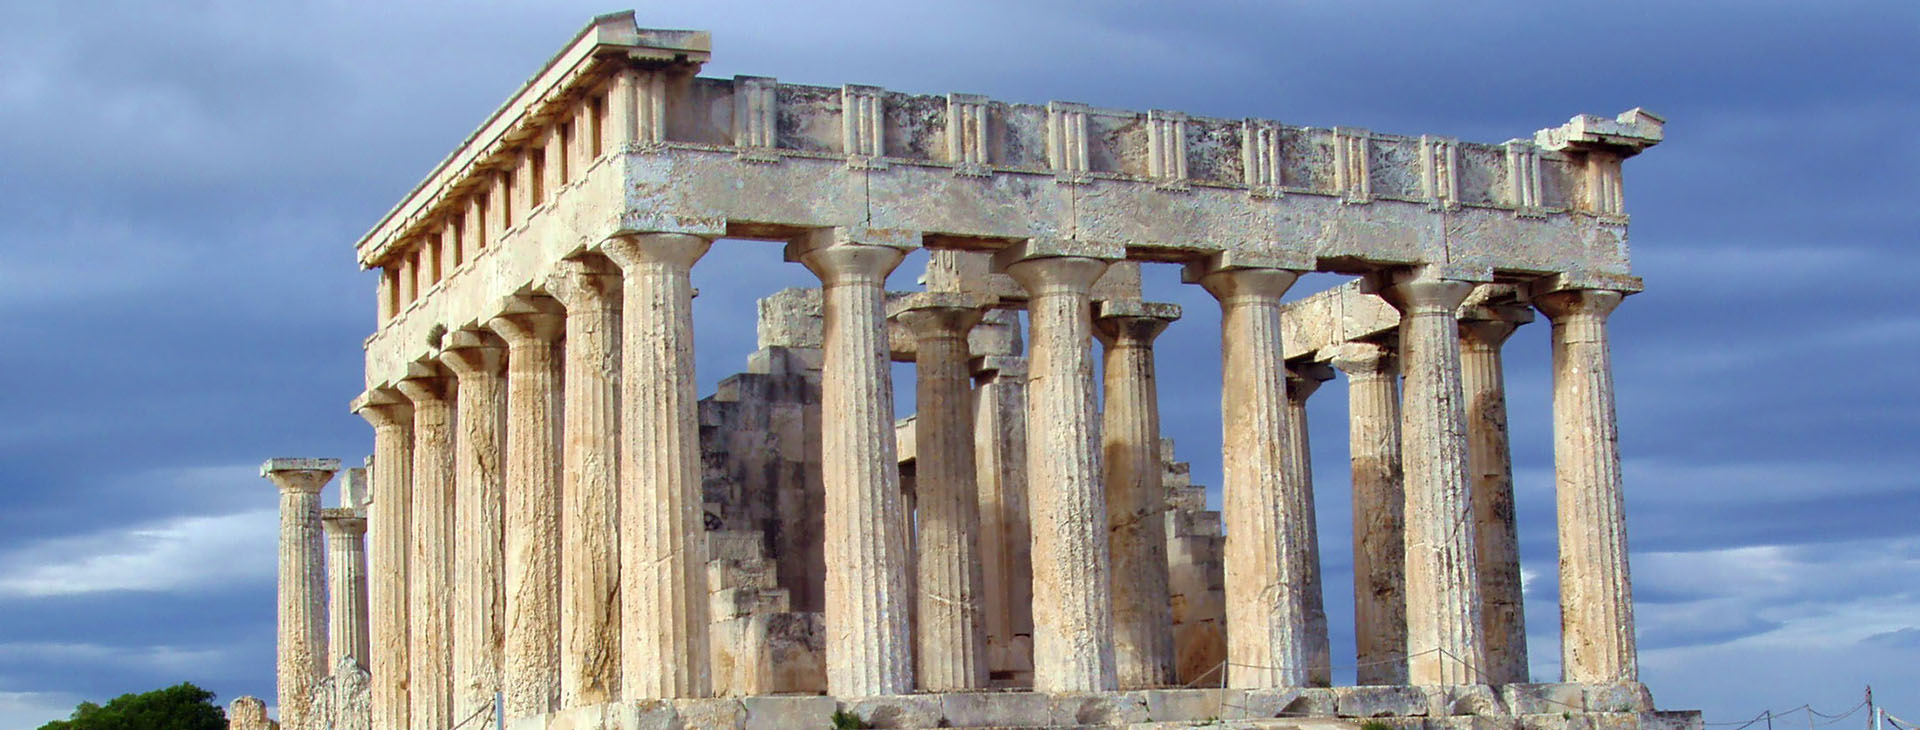 Temple of Aphaia, Aegina island